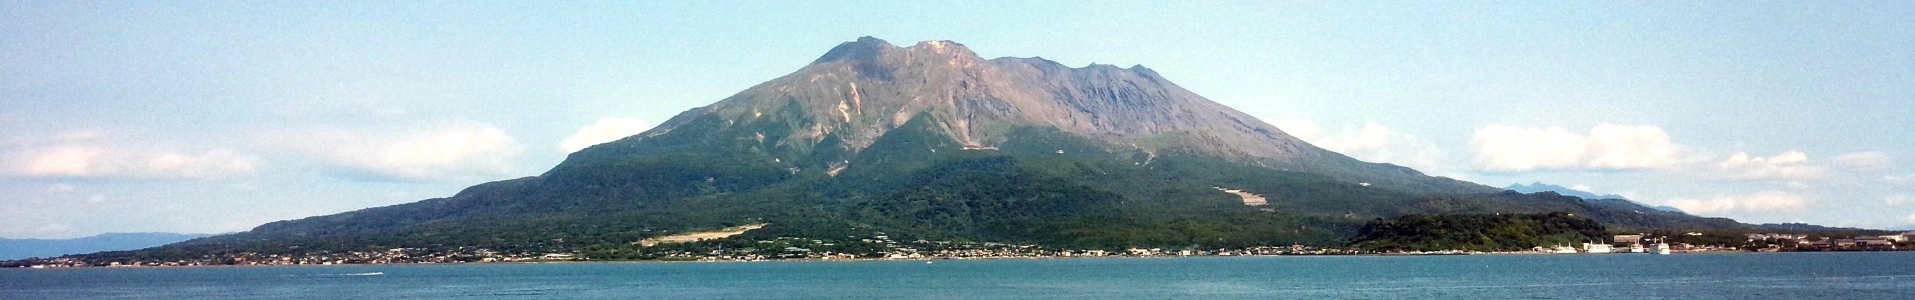 Sakurajimayama_1920x300